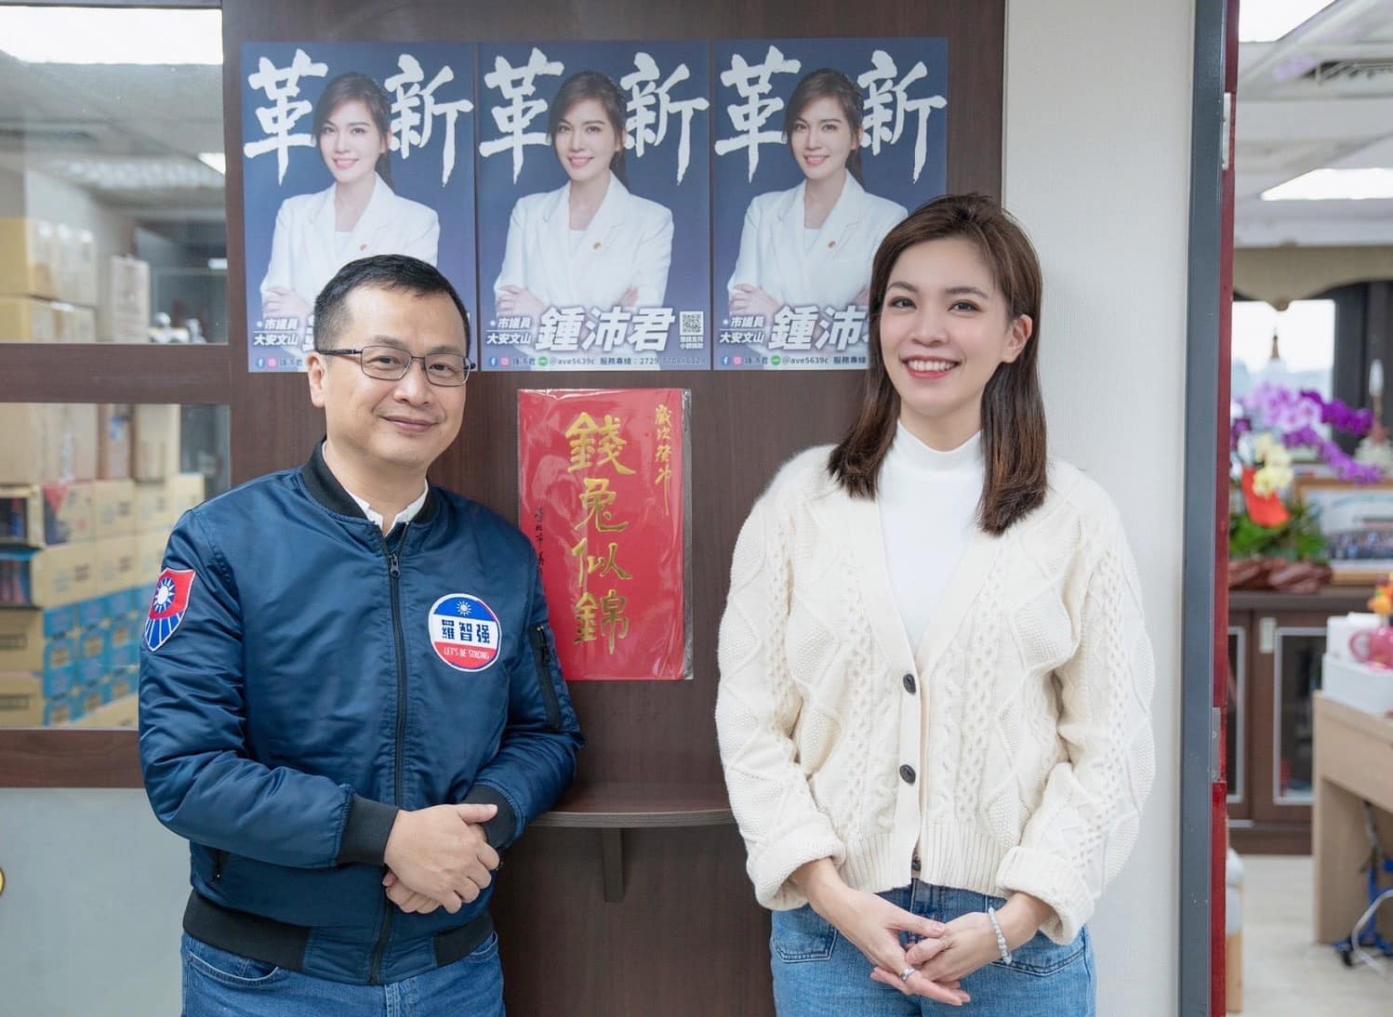 鍾沛君（右）與羅智強（左）都已表態參選國民黨大安區立委初選。翻攝鍾沛君臉書